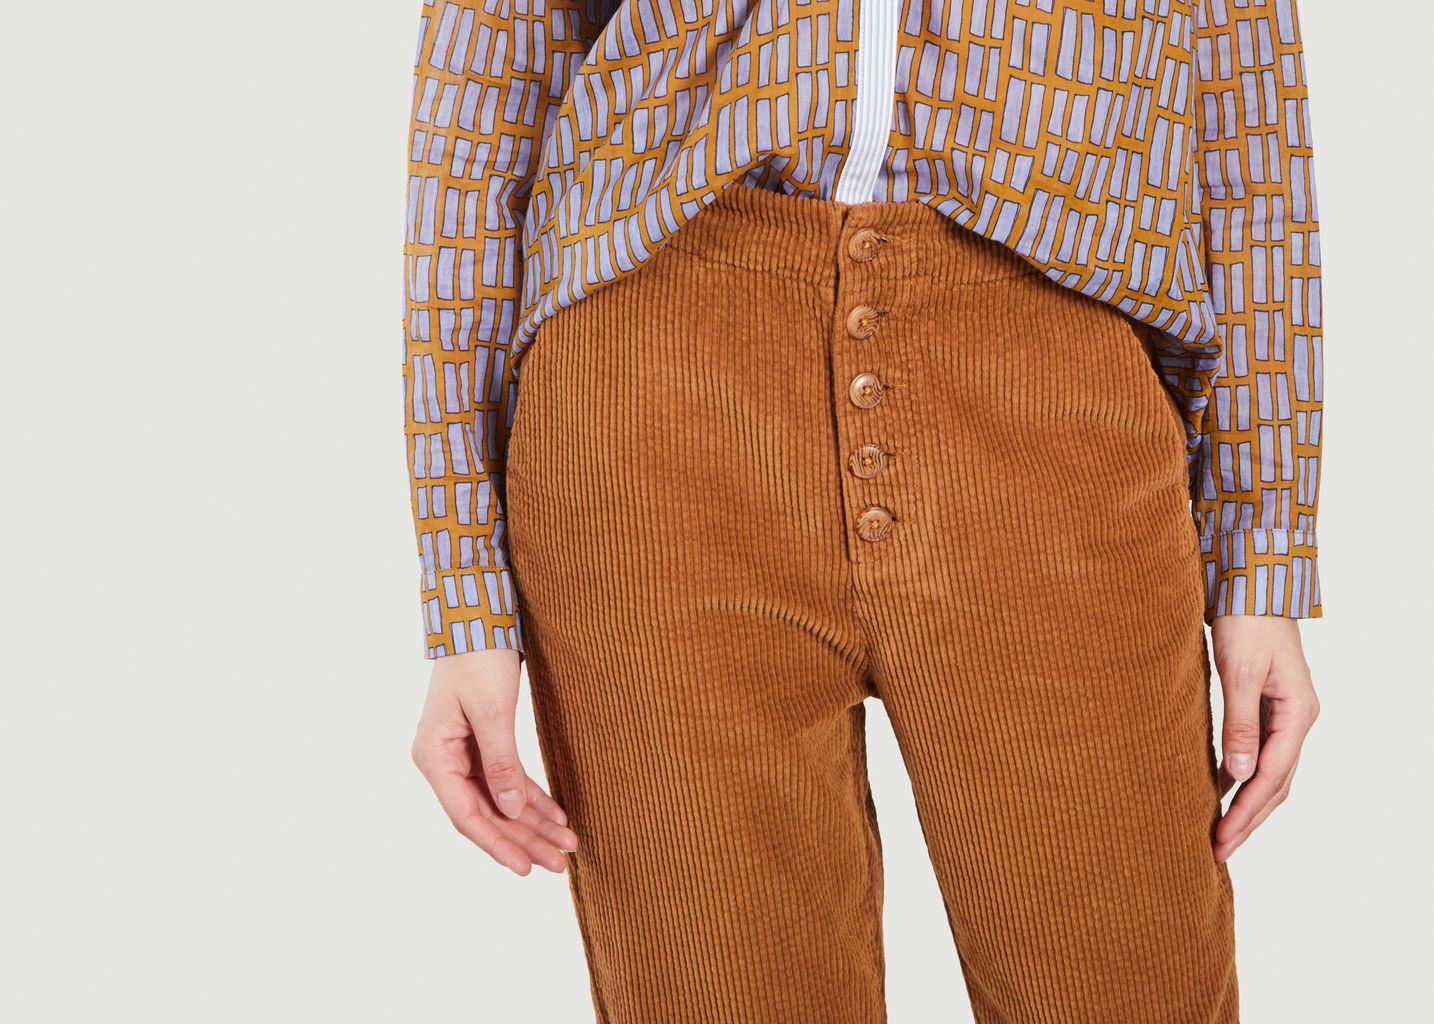 7/8th length corduroy pants - Chloé Stora